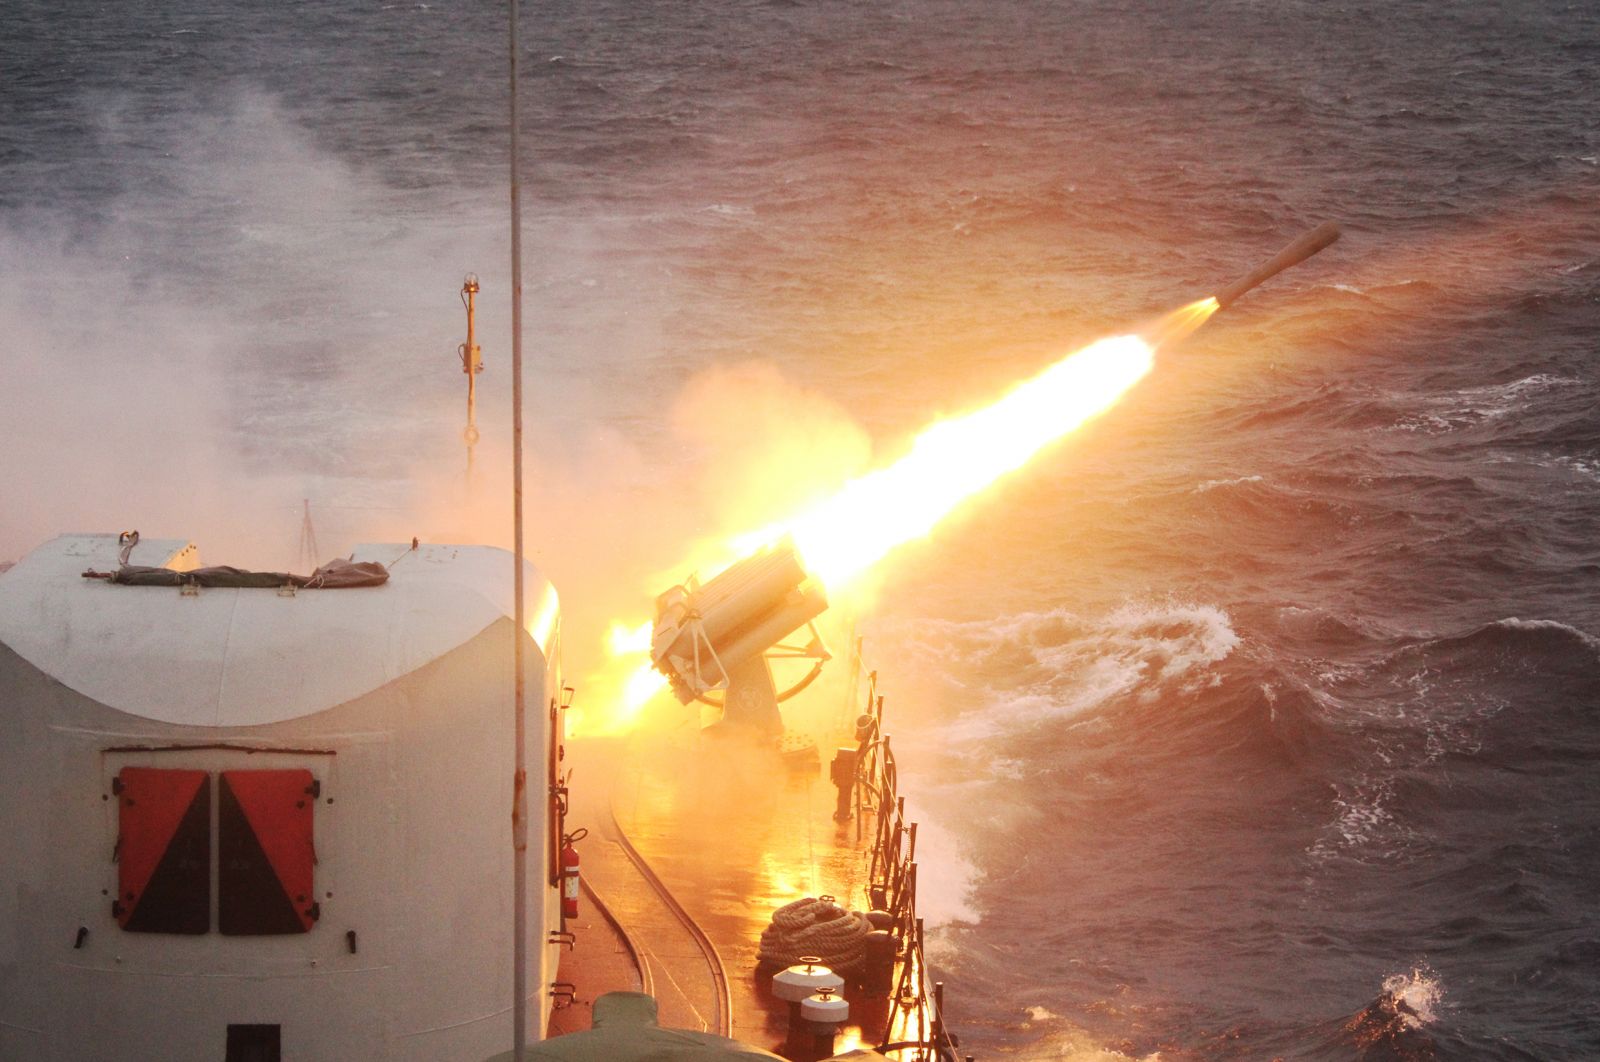 Tàu 11 thực hành bắn pháo tiêu diệt mục tiêu trên biển